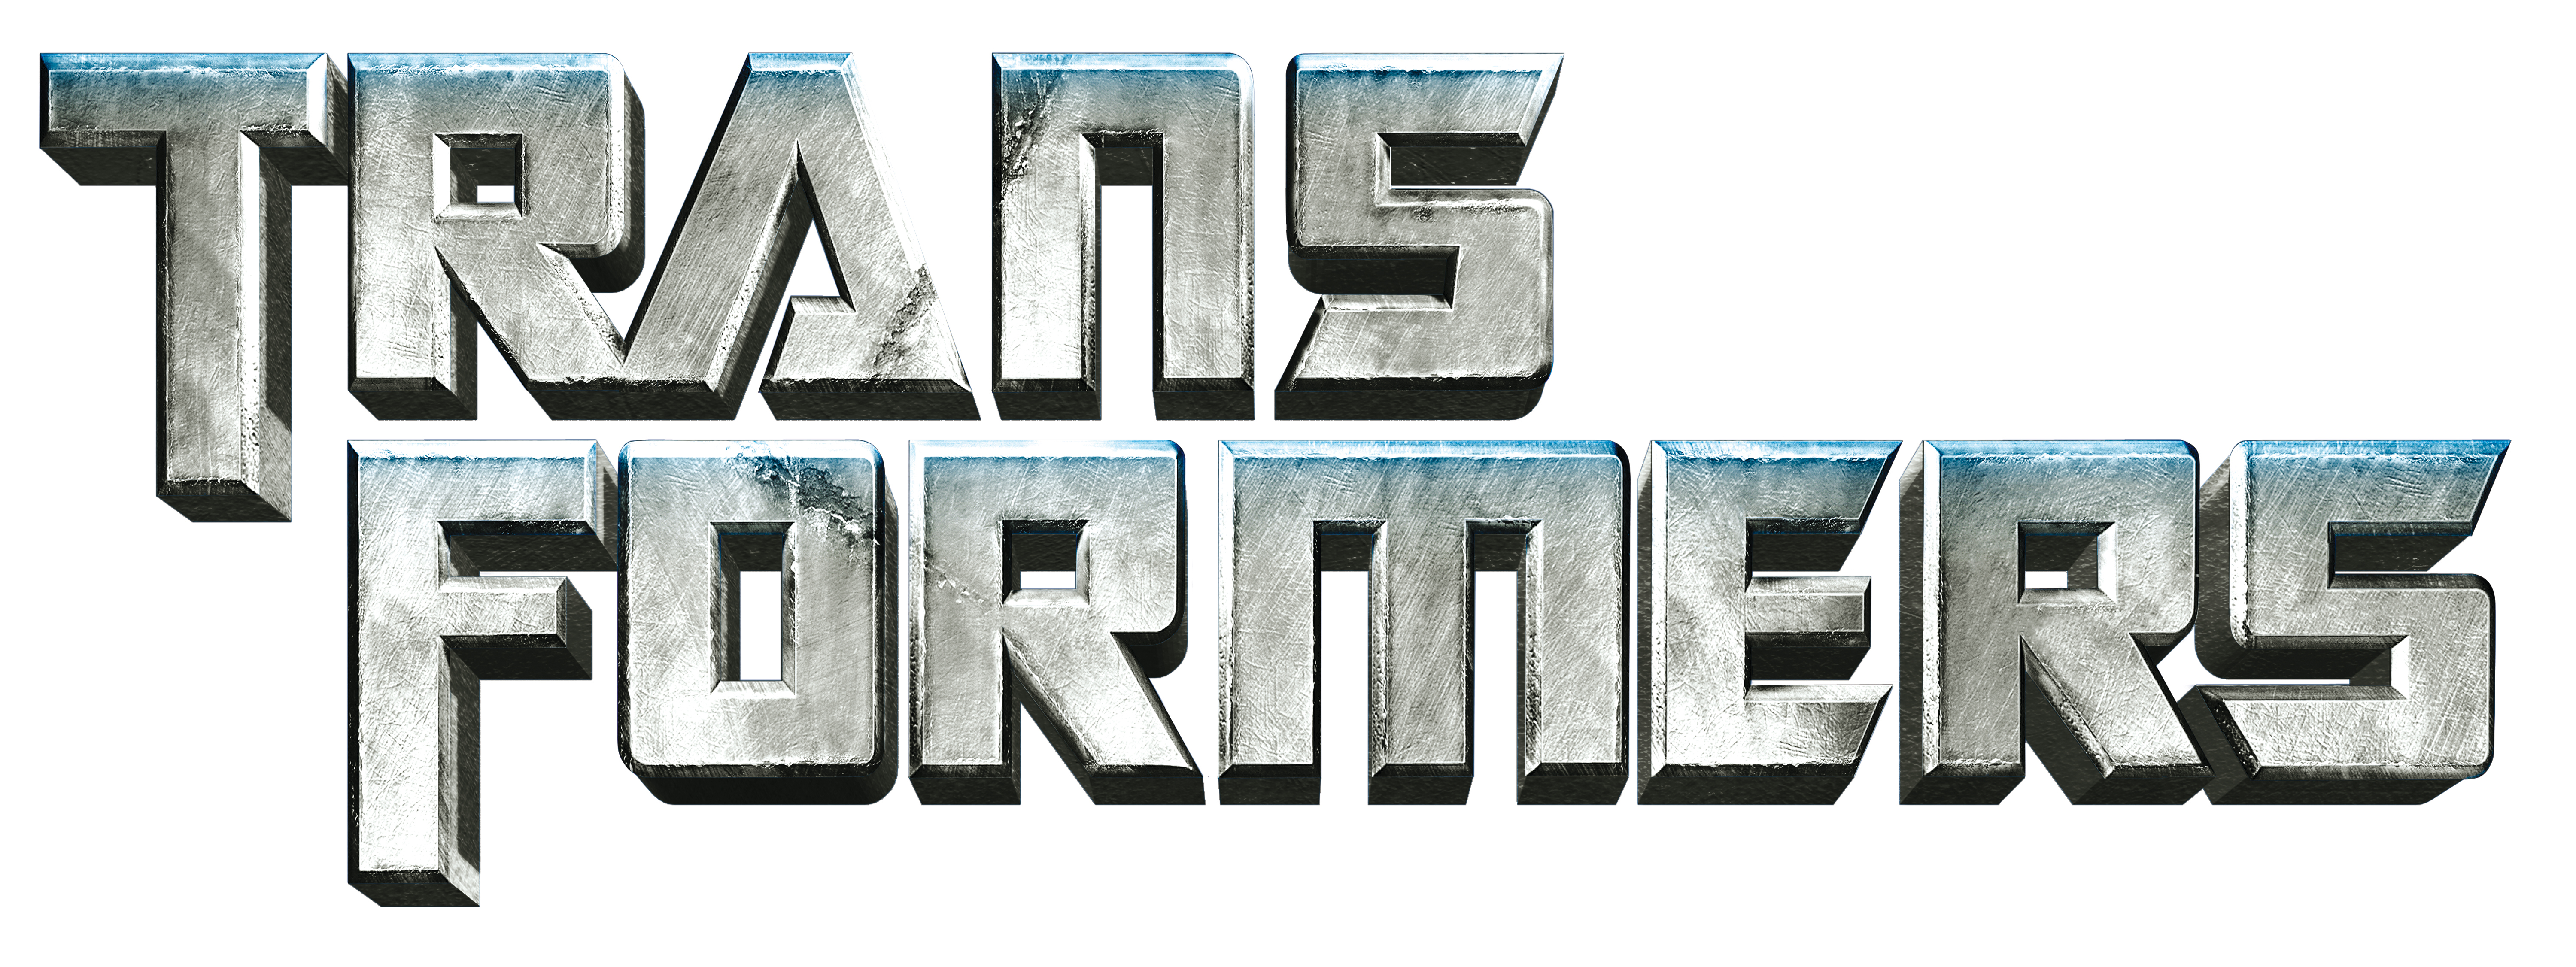 Transformers - secondary logo by jasta-ru on DeviantArt